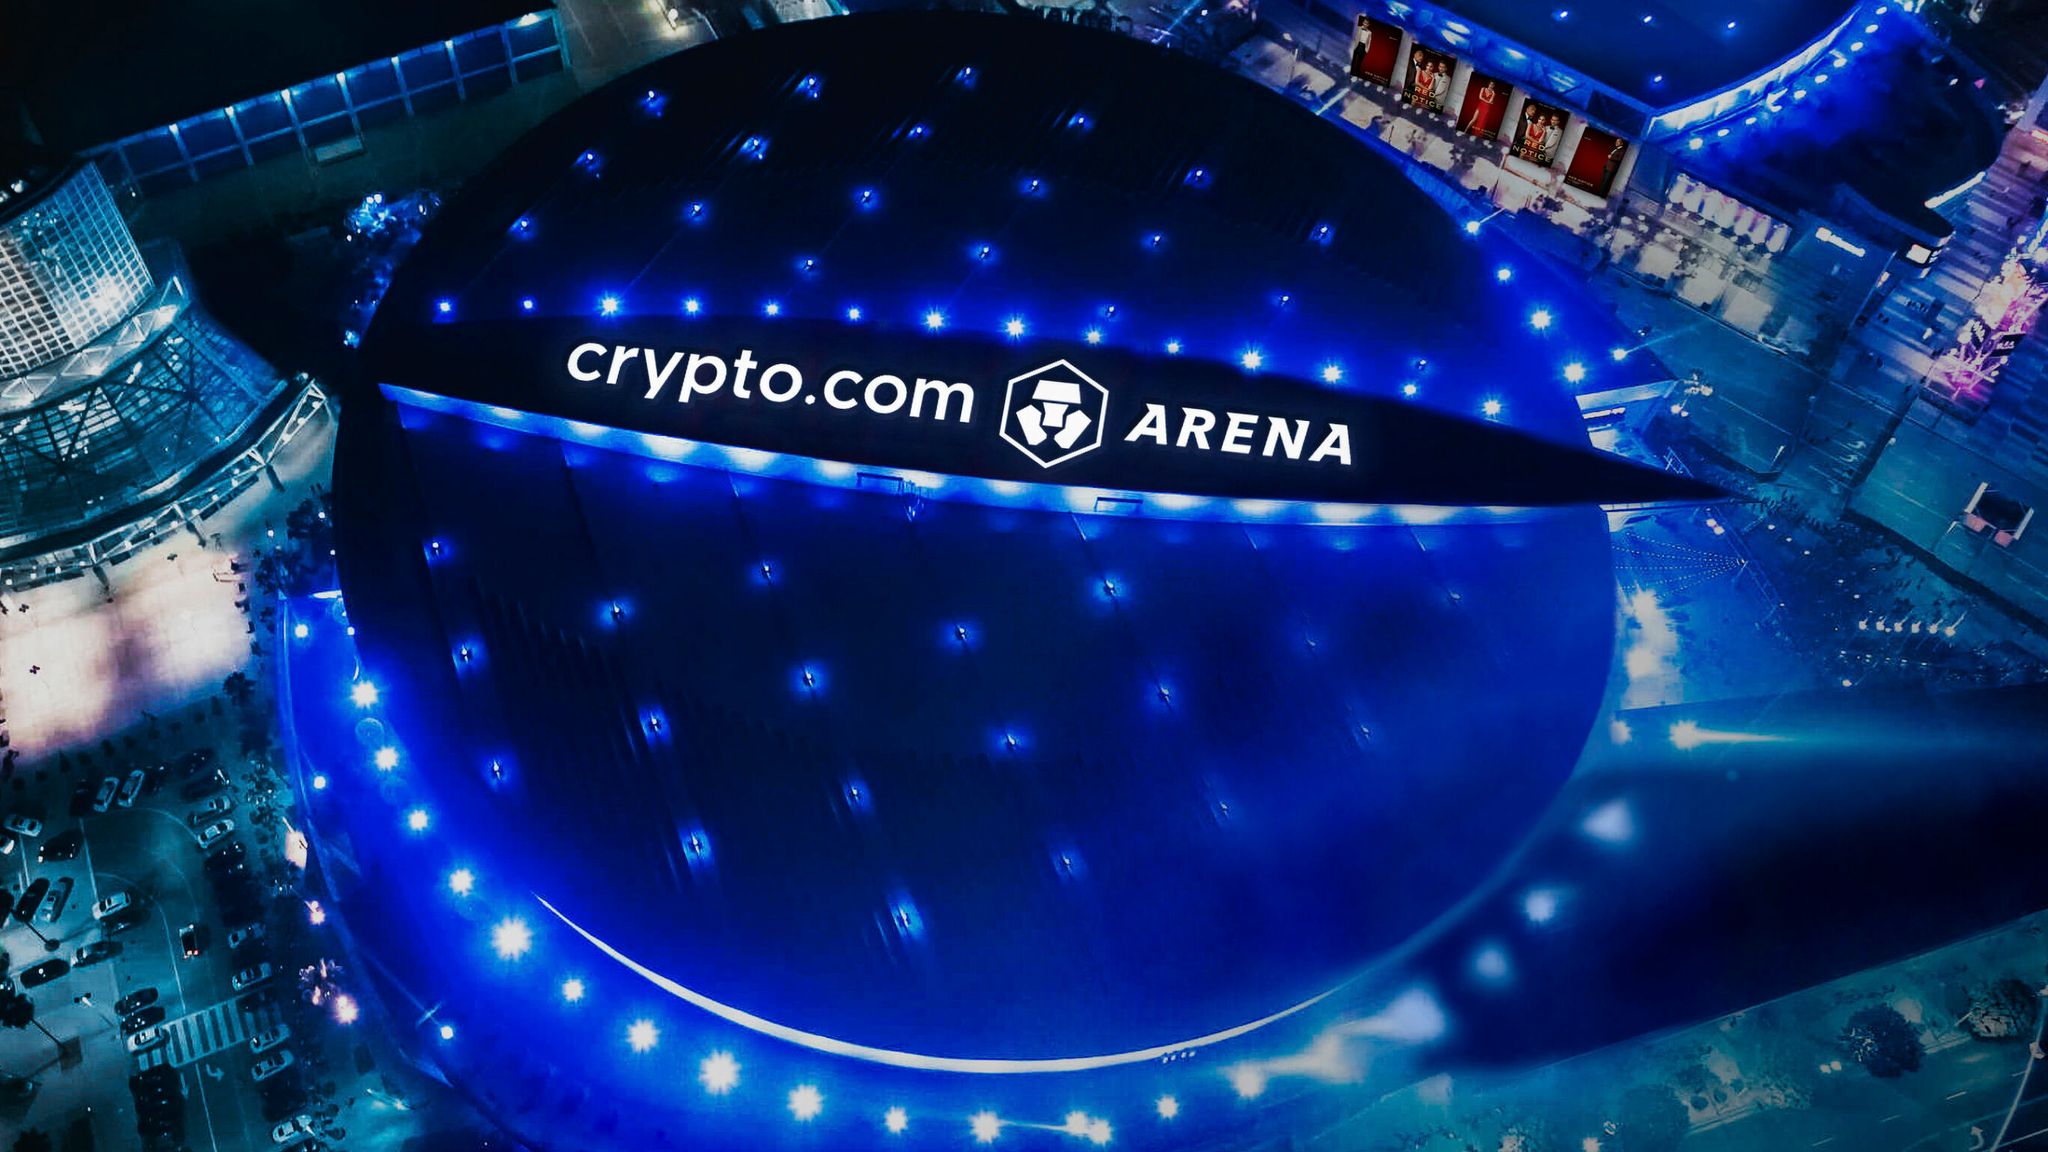 crypto.com arena about